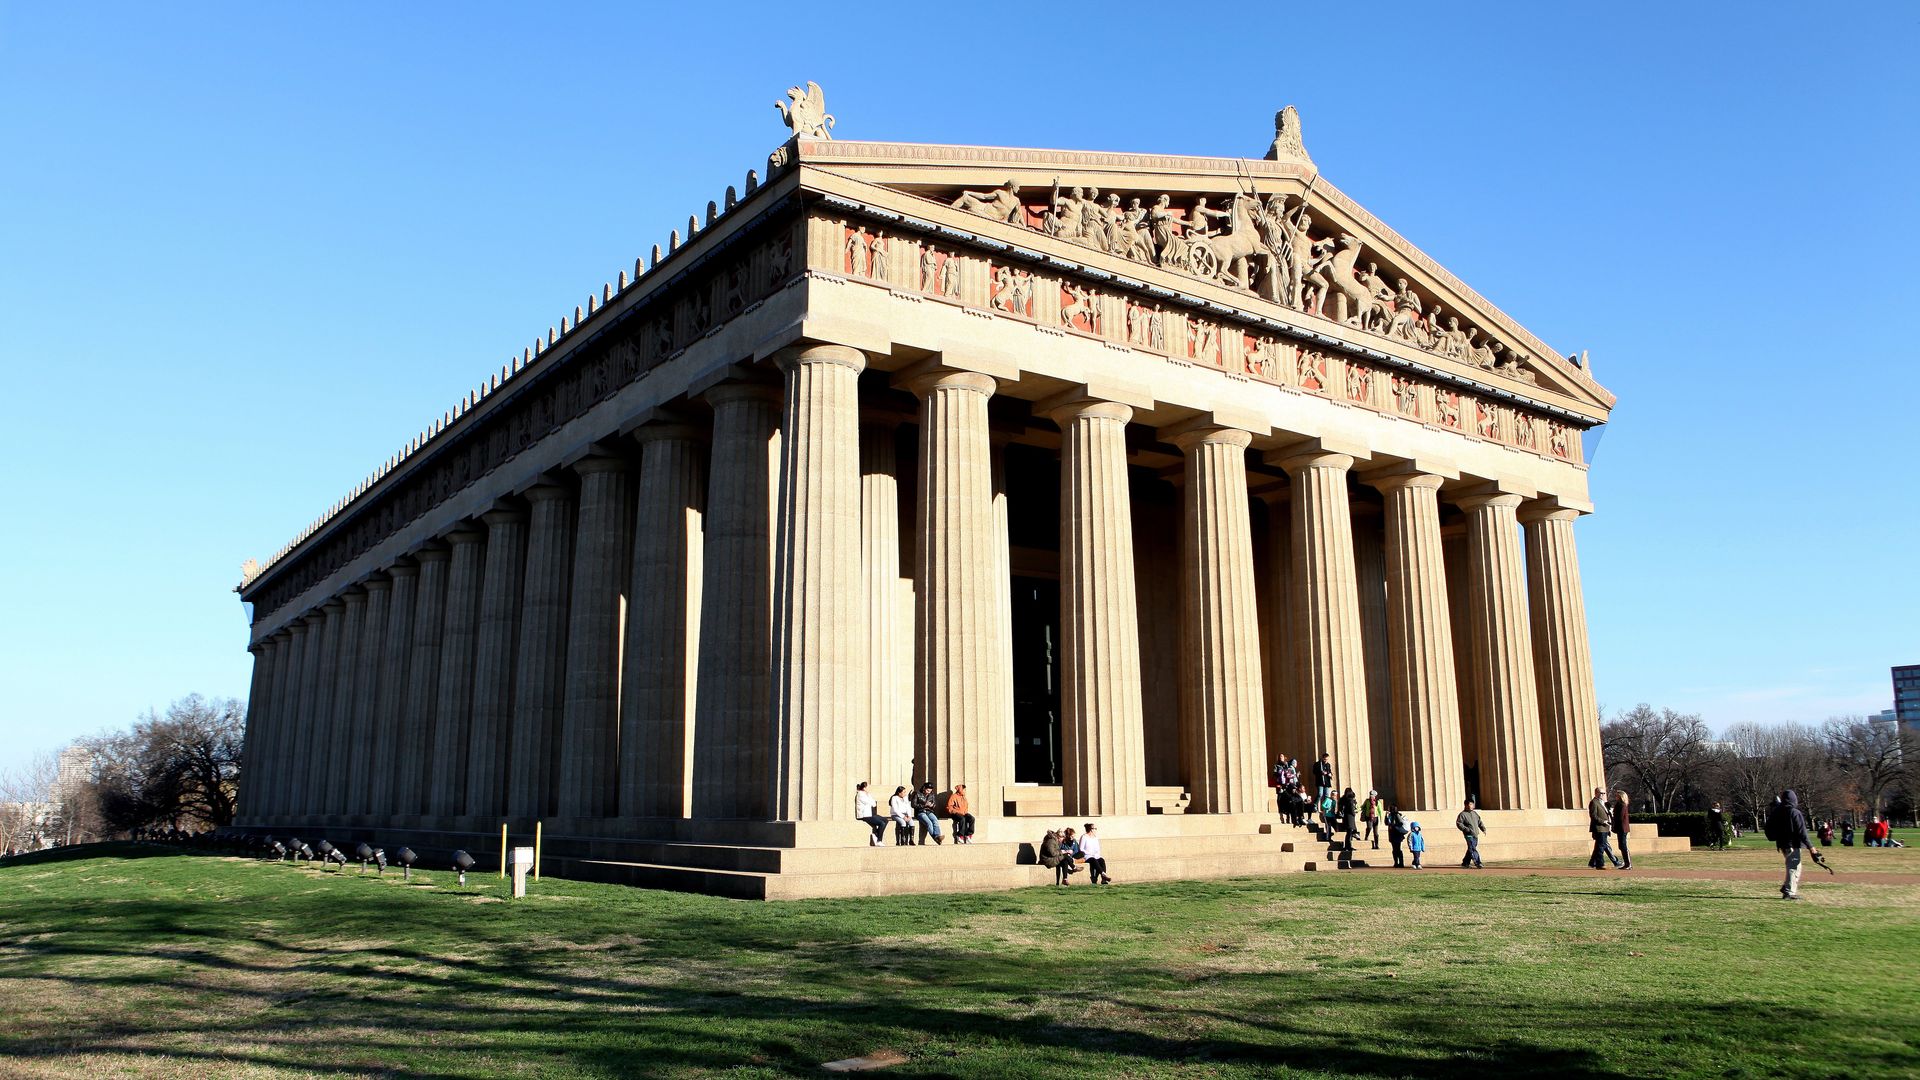 An exterior of the Nashville Parthenon